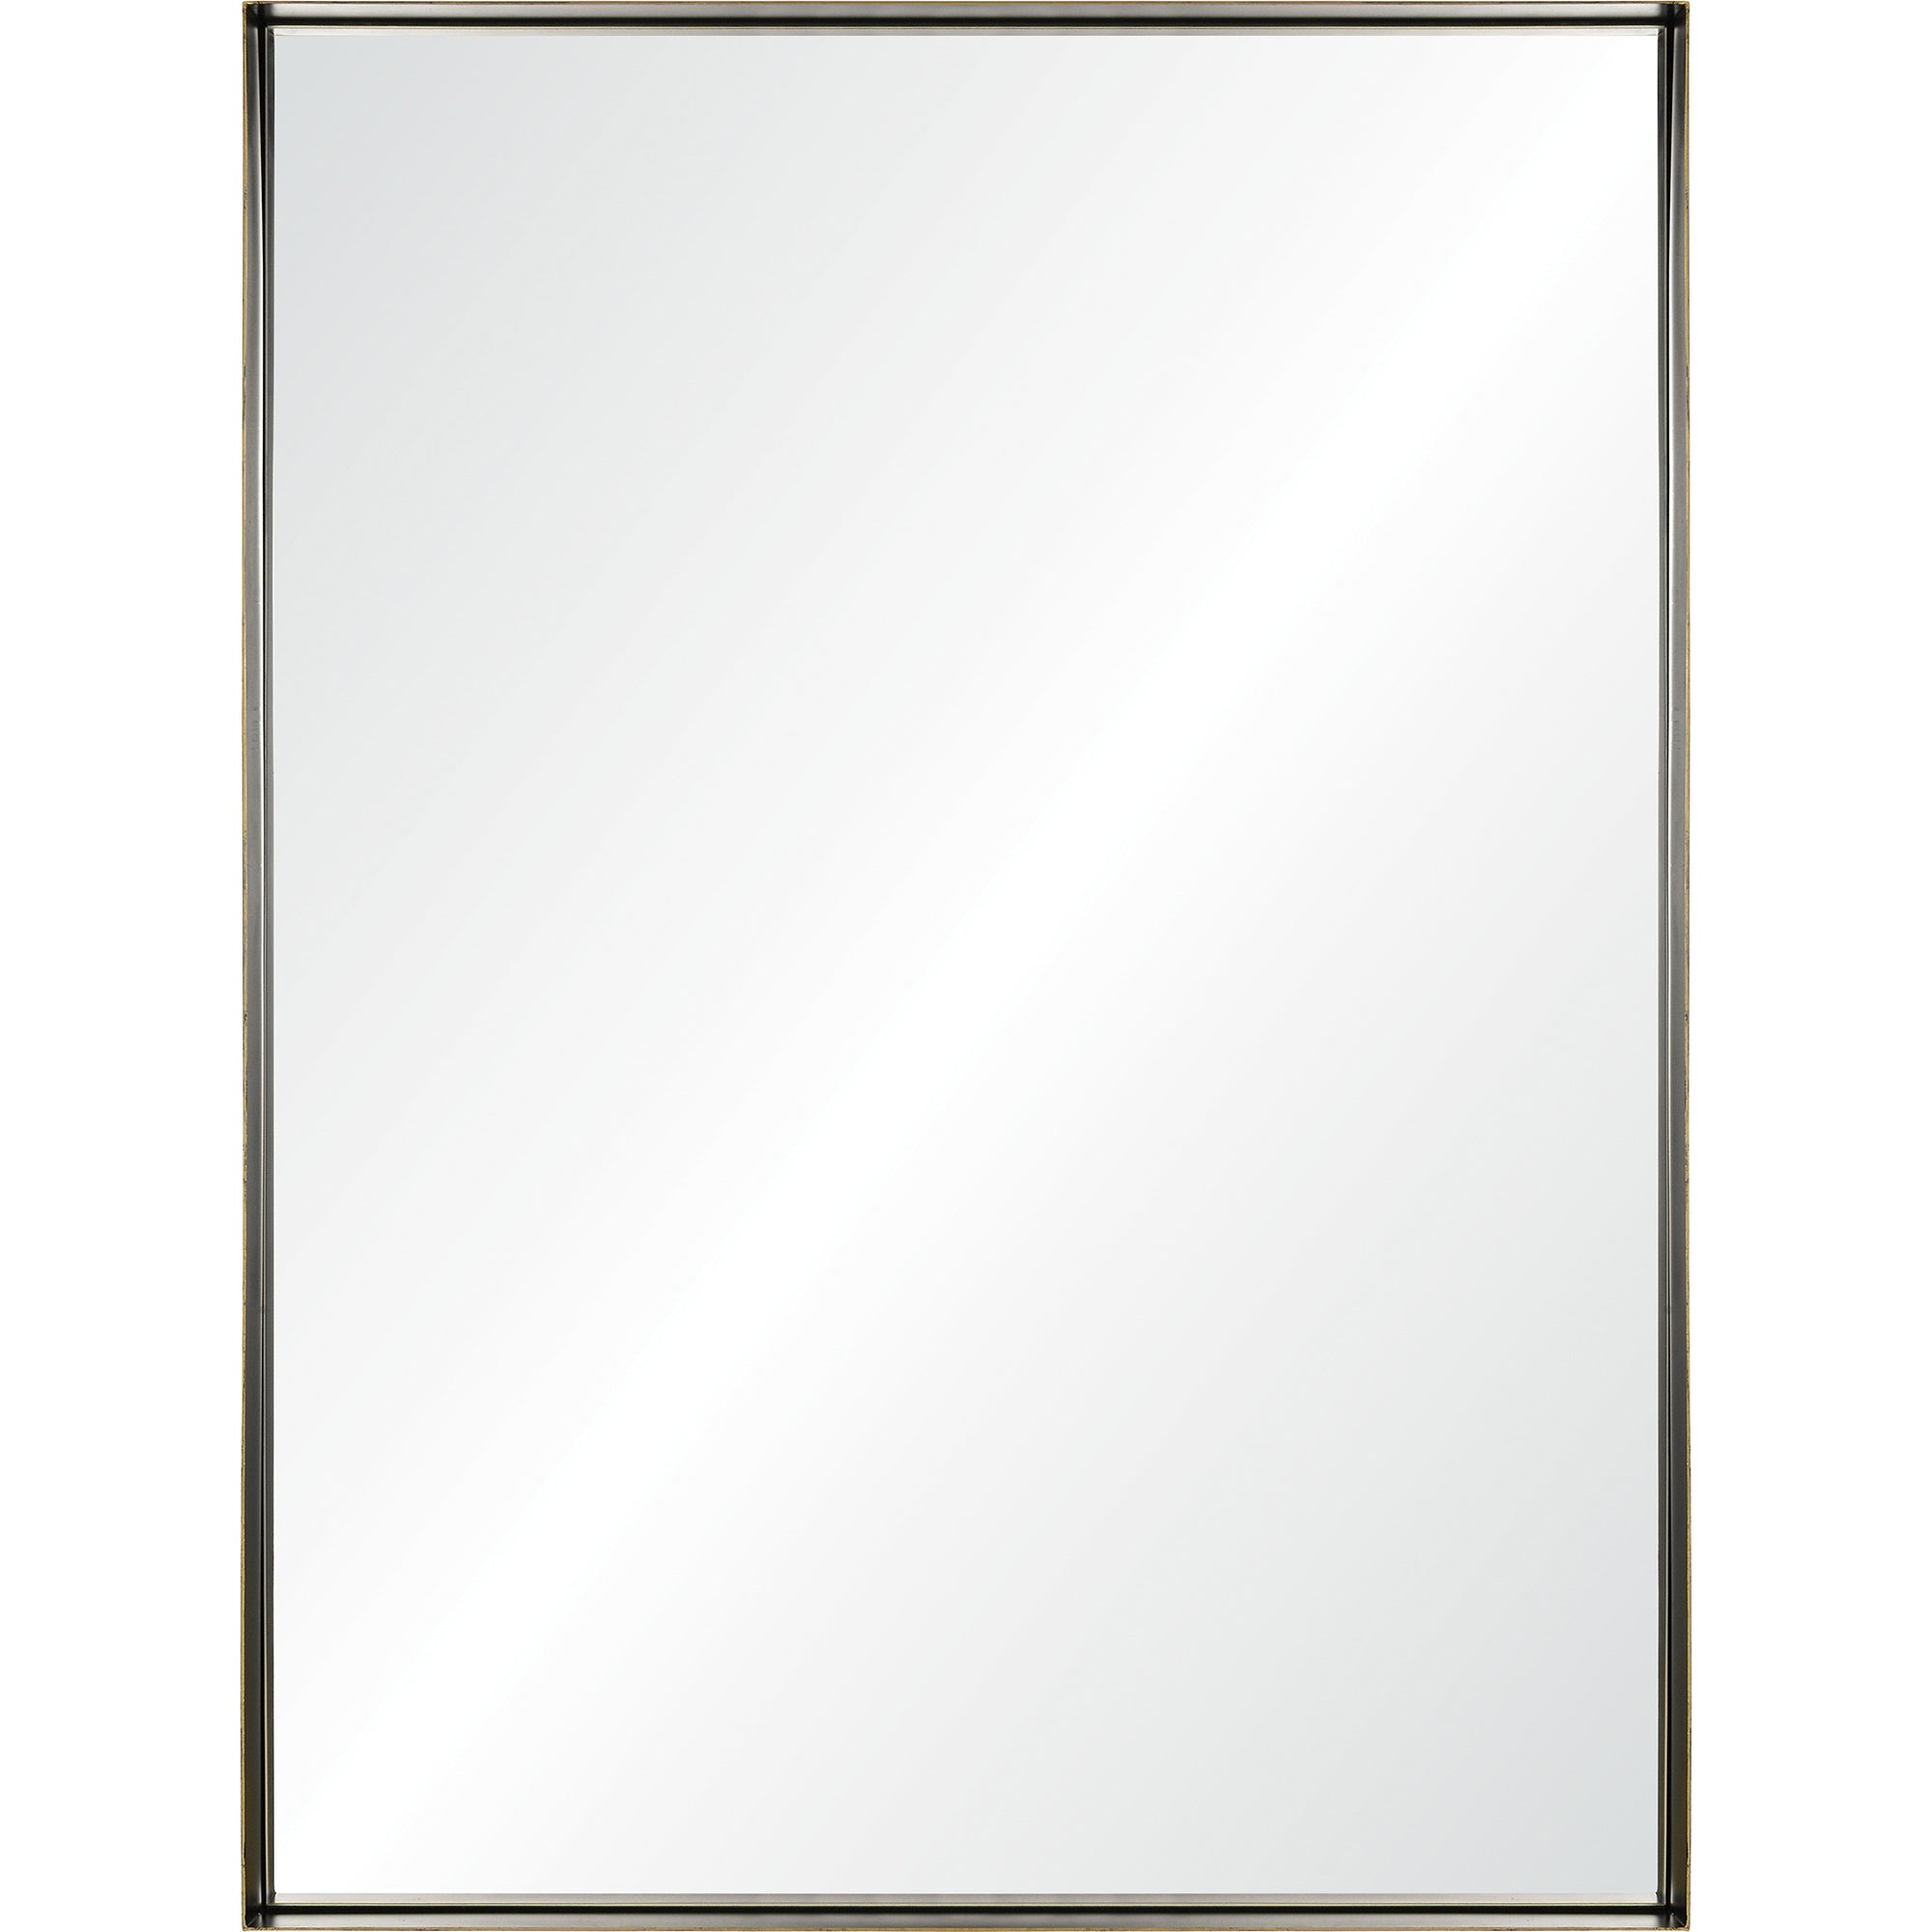 Yaelle 30" Iron - Gold Accent Mirror